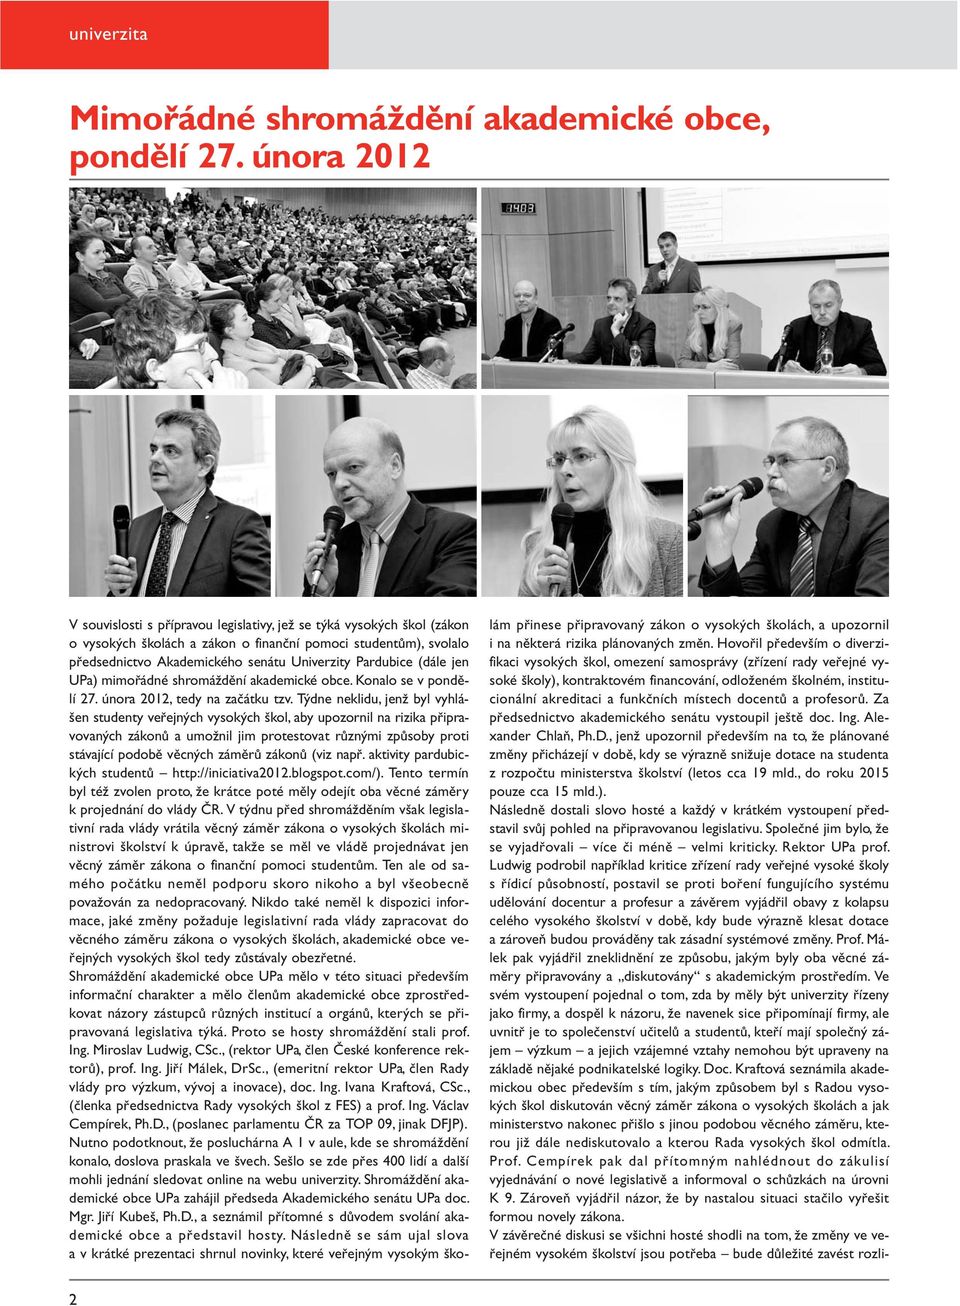 Pardubice (dále jen UPa) mimořádné shromáždění akademické obce. Konalo se v pondělí 27. února 2012, tedy na začátku tzv.